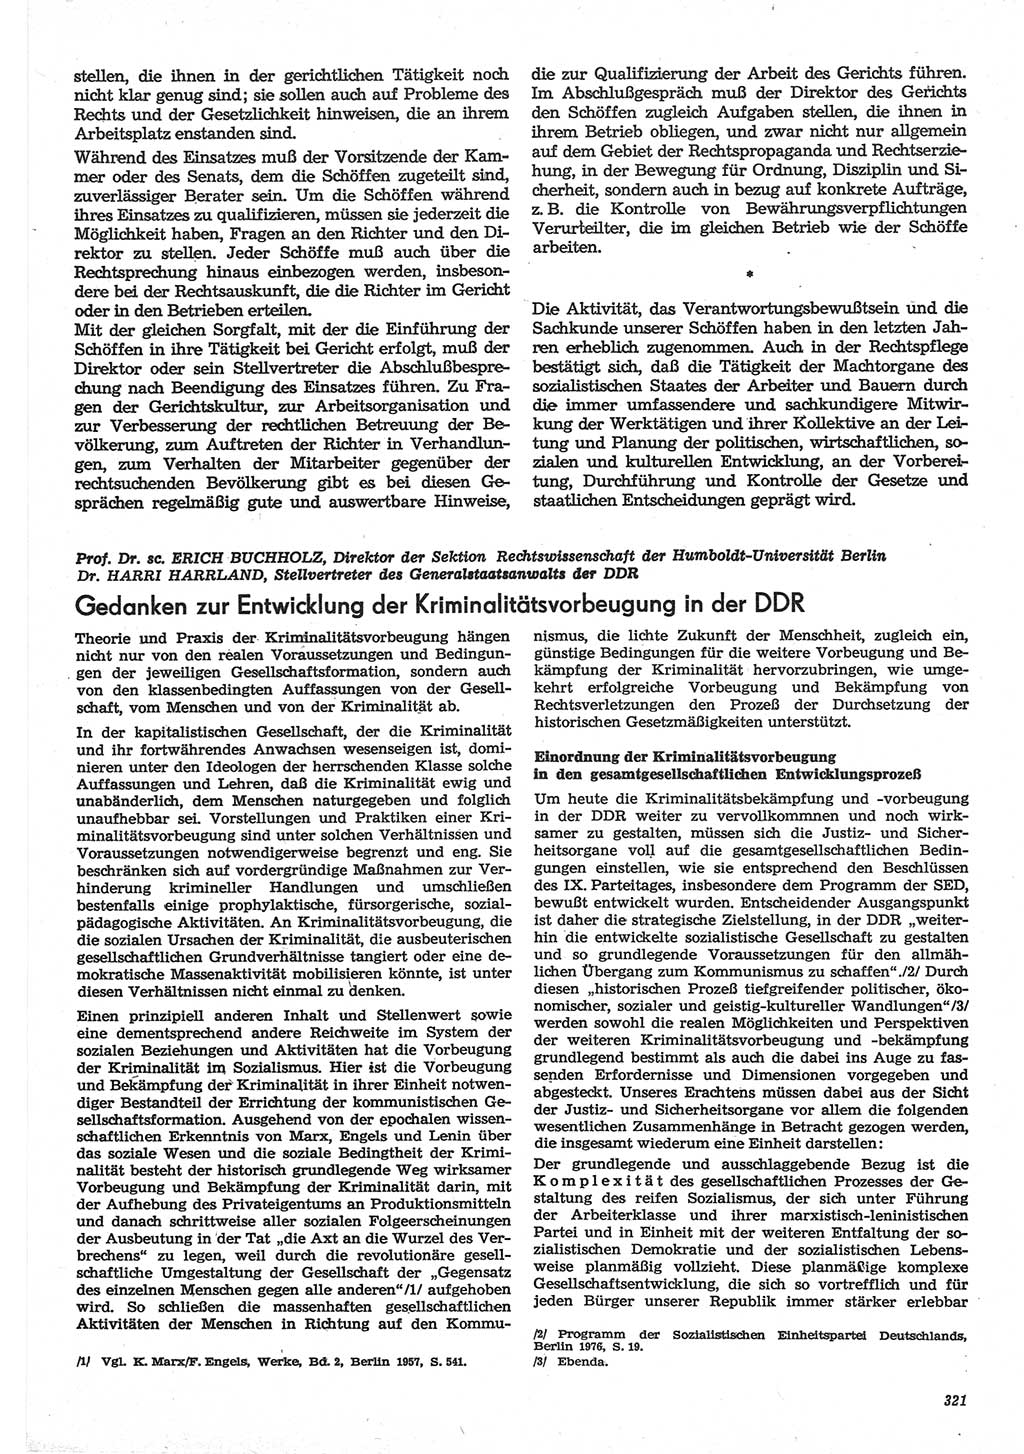 Neue Justiz (NJ), Zeitschrift für Recht und Rechtswissenschaft-Zeitschrift, sozialistisches Recht und Gesetzlichkeit, 31. Jahrgang 1977, Seite 321 (NJ DDR 1977, S. 321)